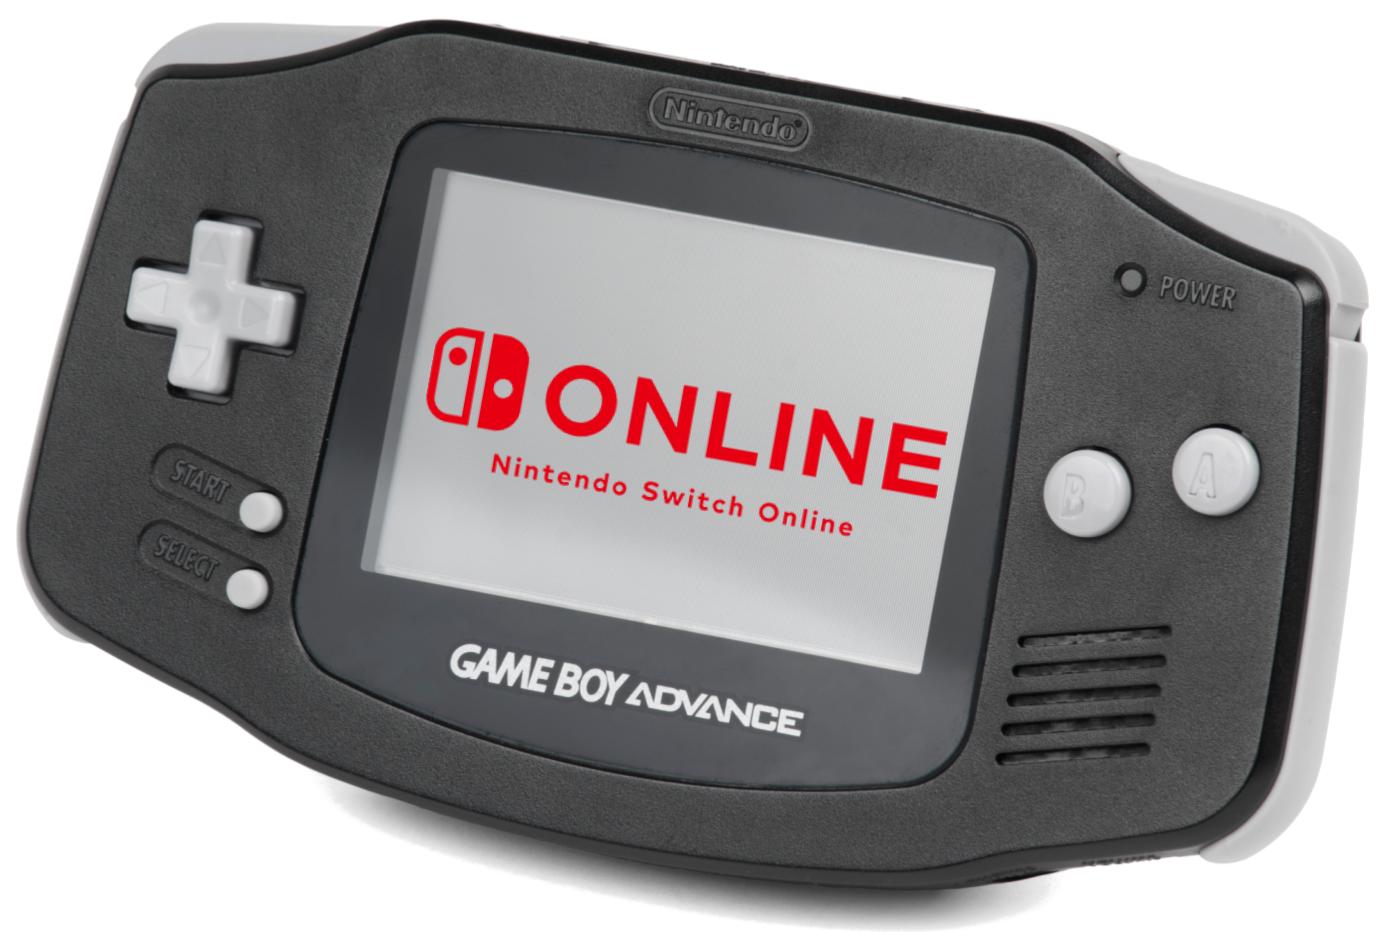 Gameboy Advance noire avec le logo Nintendo Switch Online sur l'écran